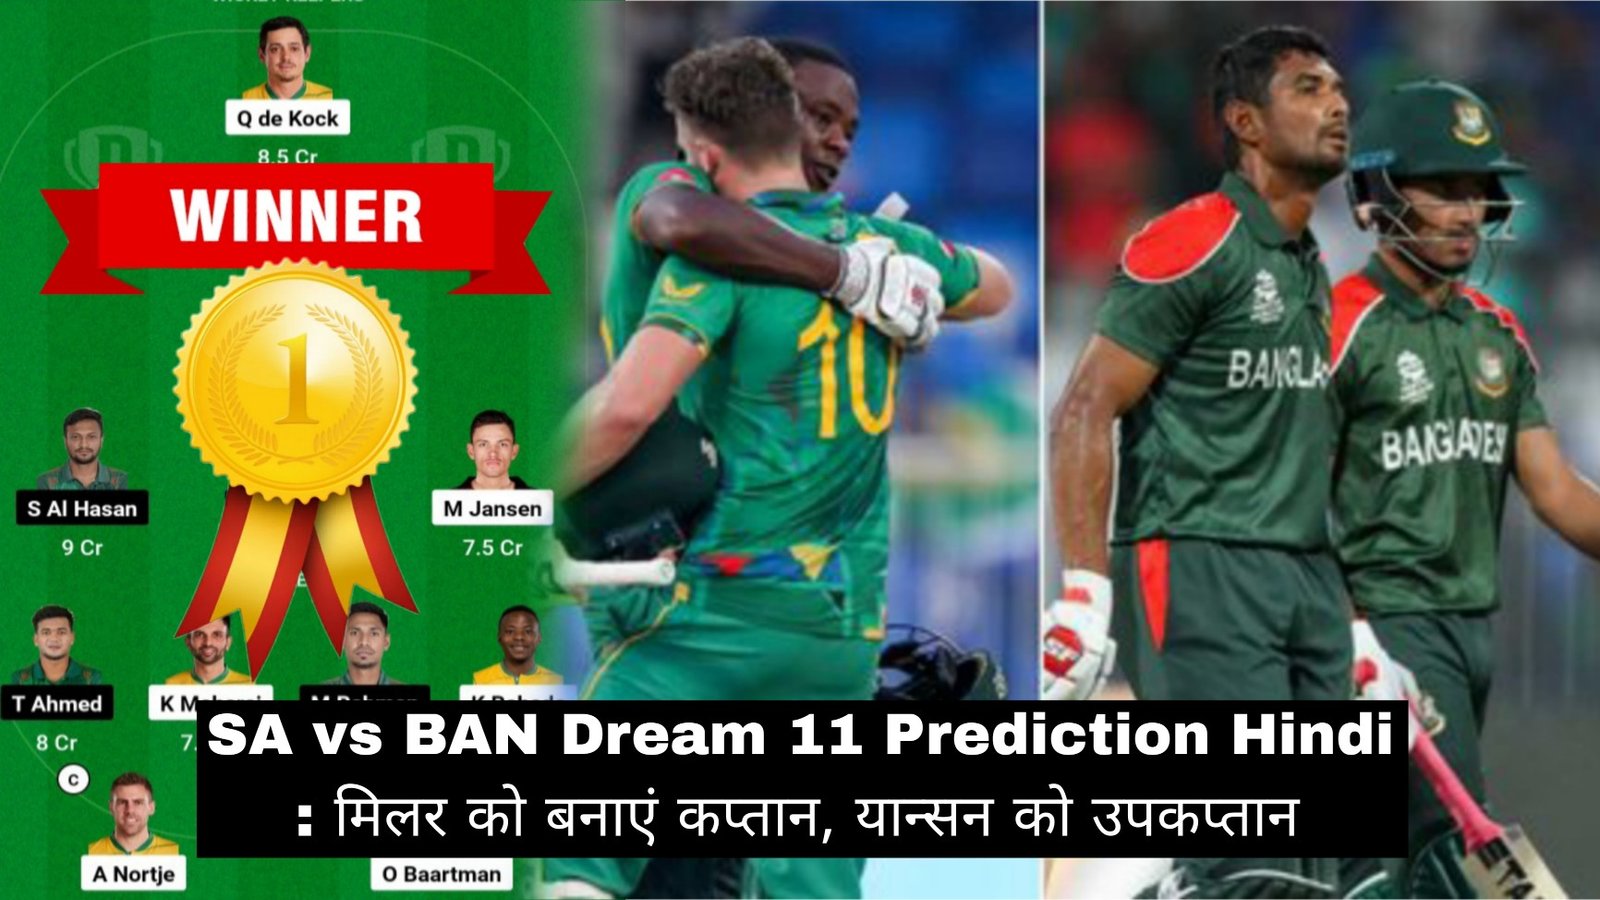 SA vs BAN Dream 11 Prediction Hindi